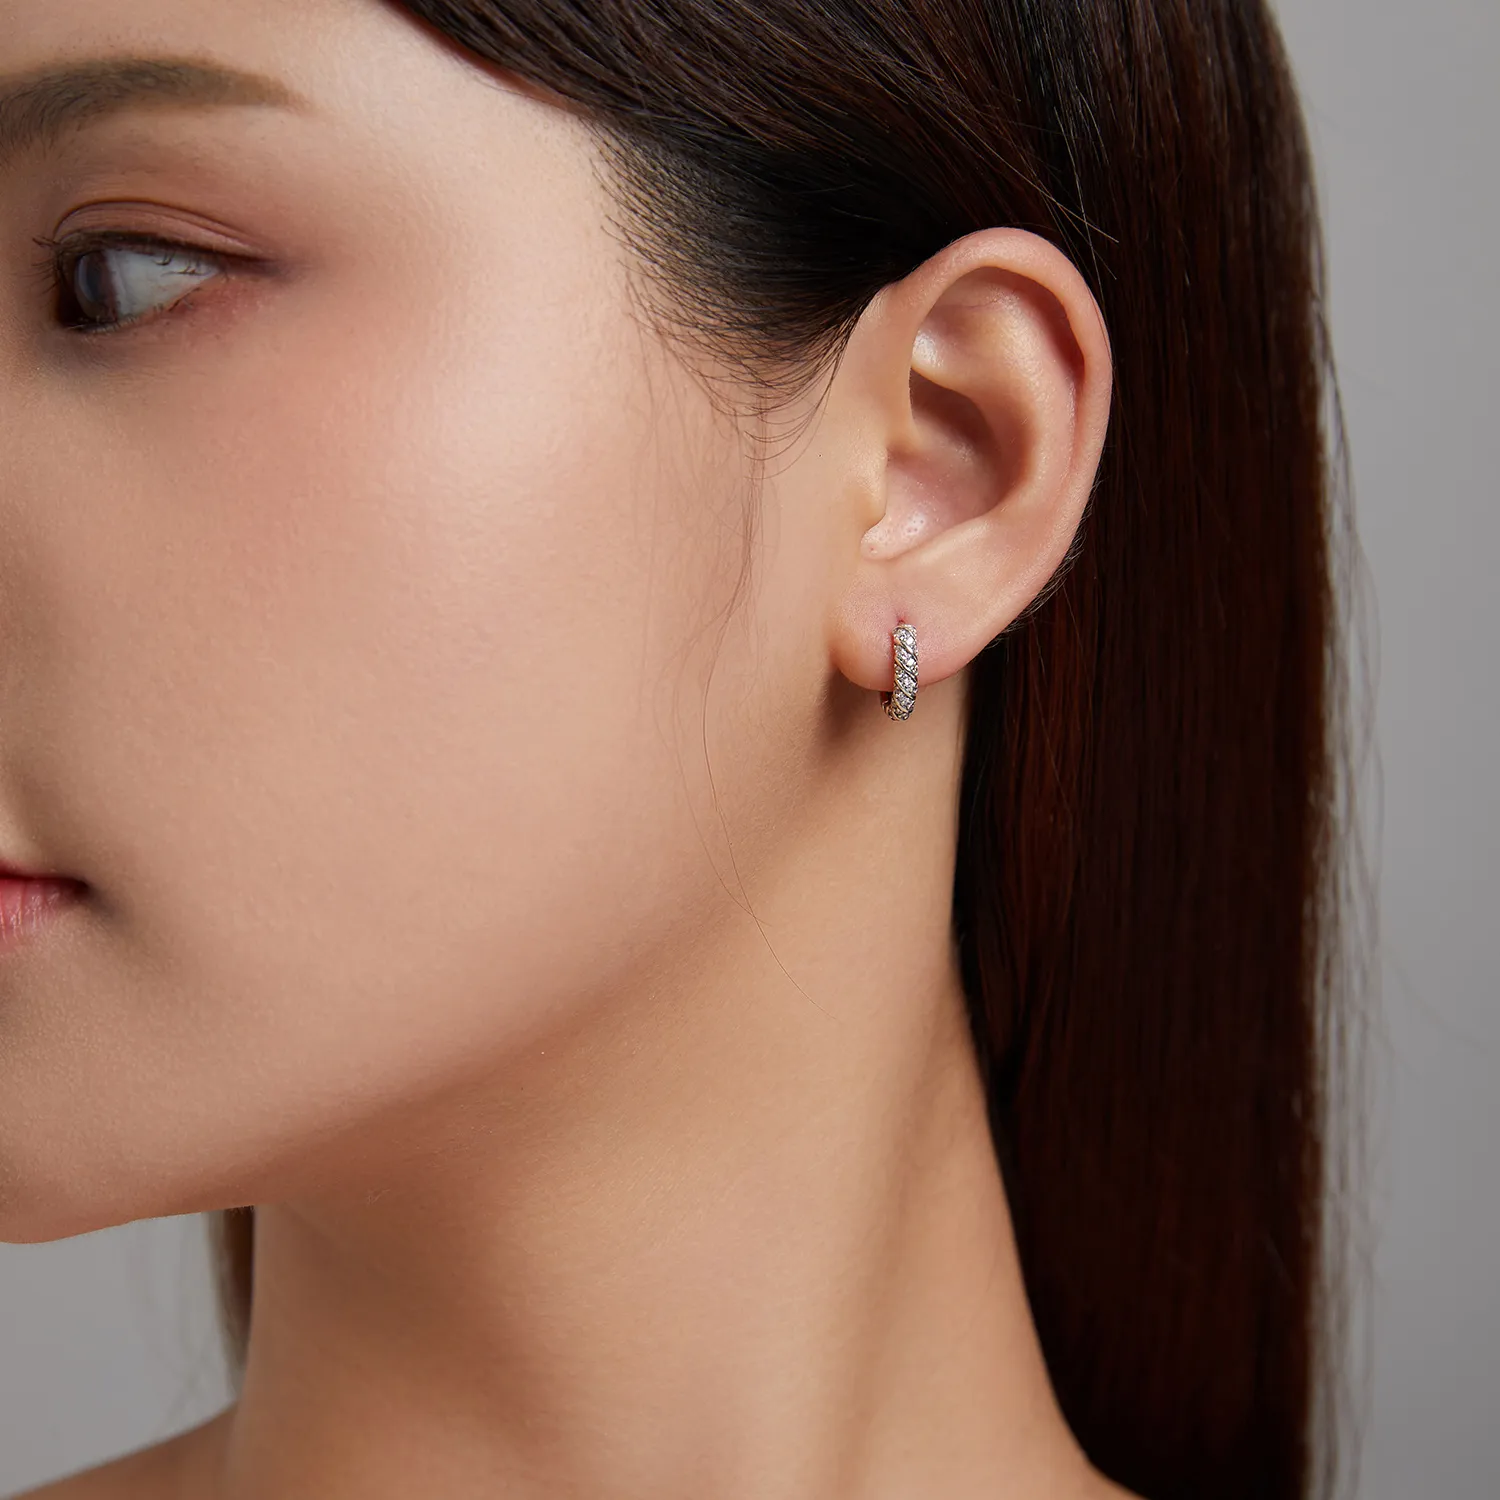 Pandora Style Elegant Woman Hoop Earrings - BSE512